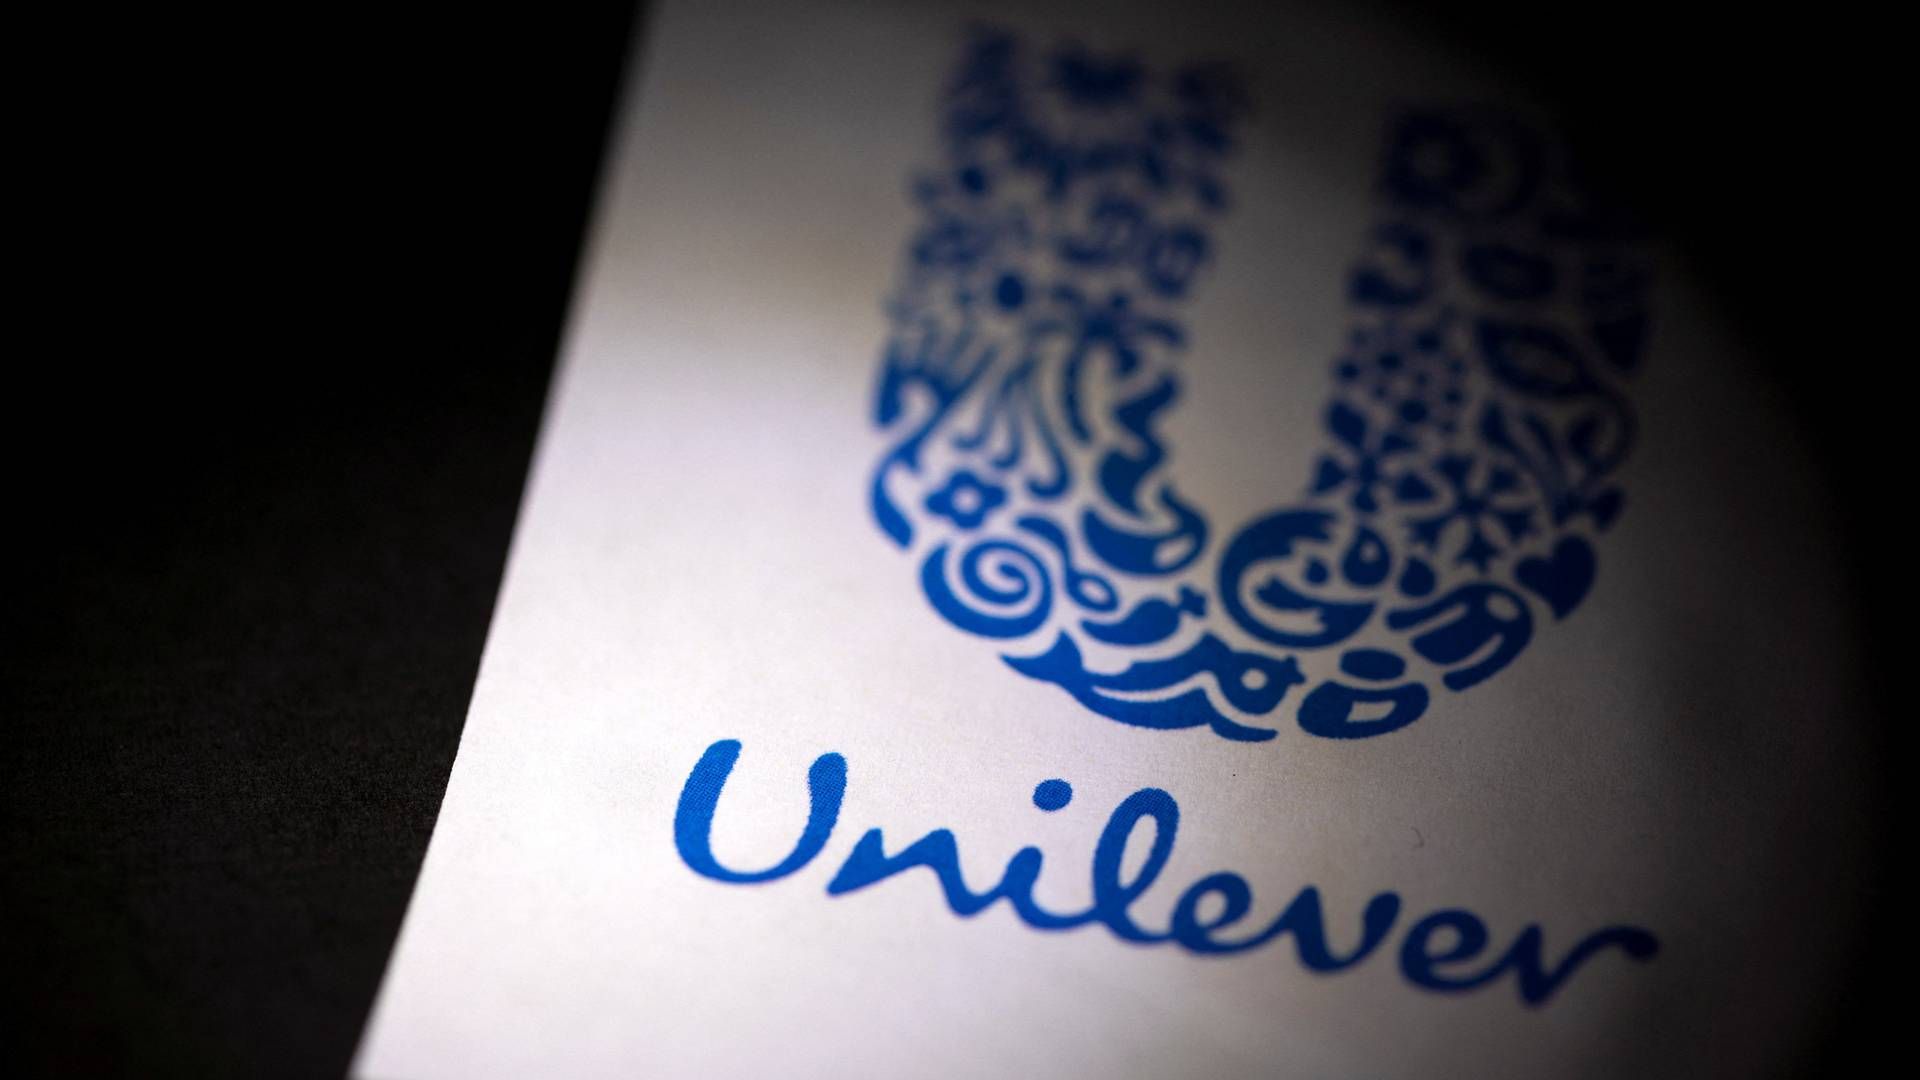 Unilever er kommet i de britiske konkurrencemyndigheders søgelys for kommerciel kommunikation. | Foto: Dado Ruvic